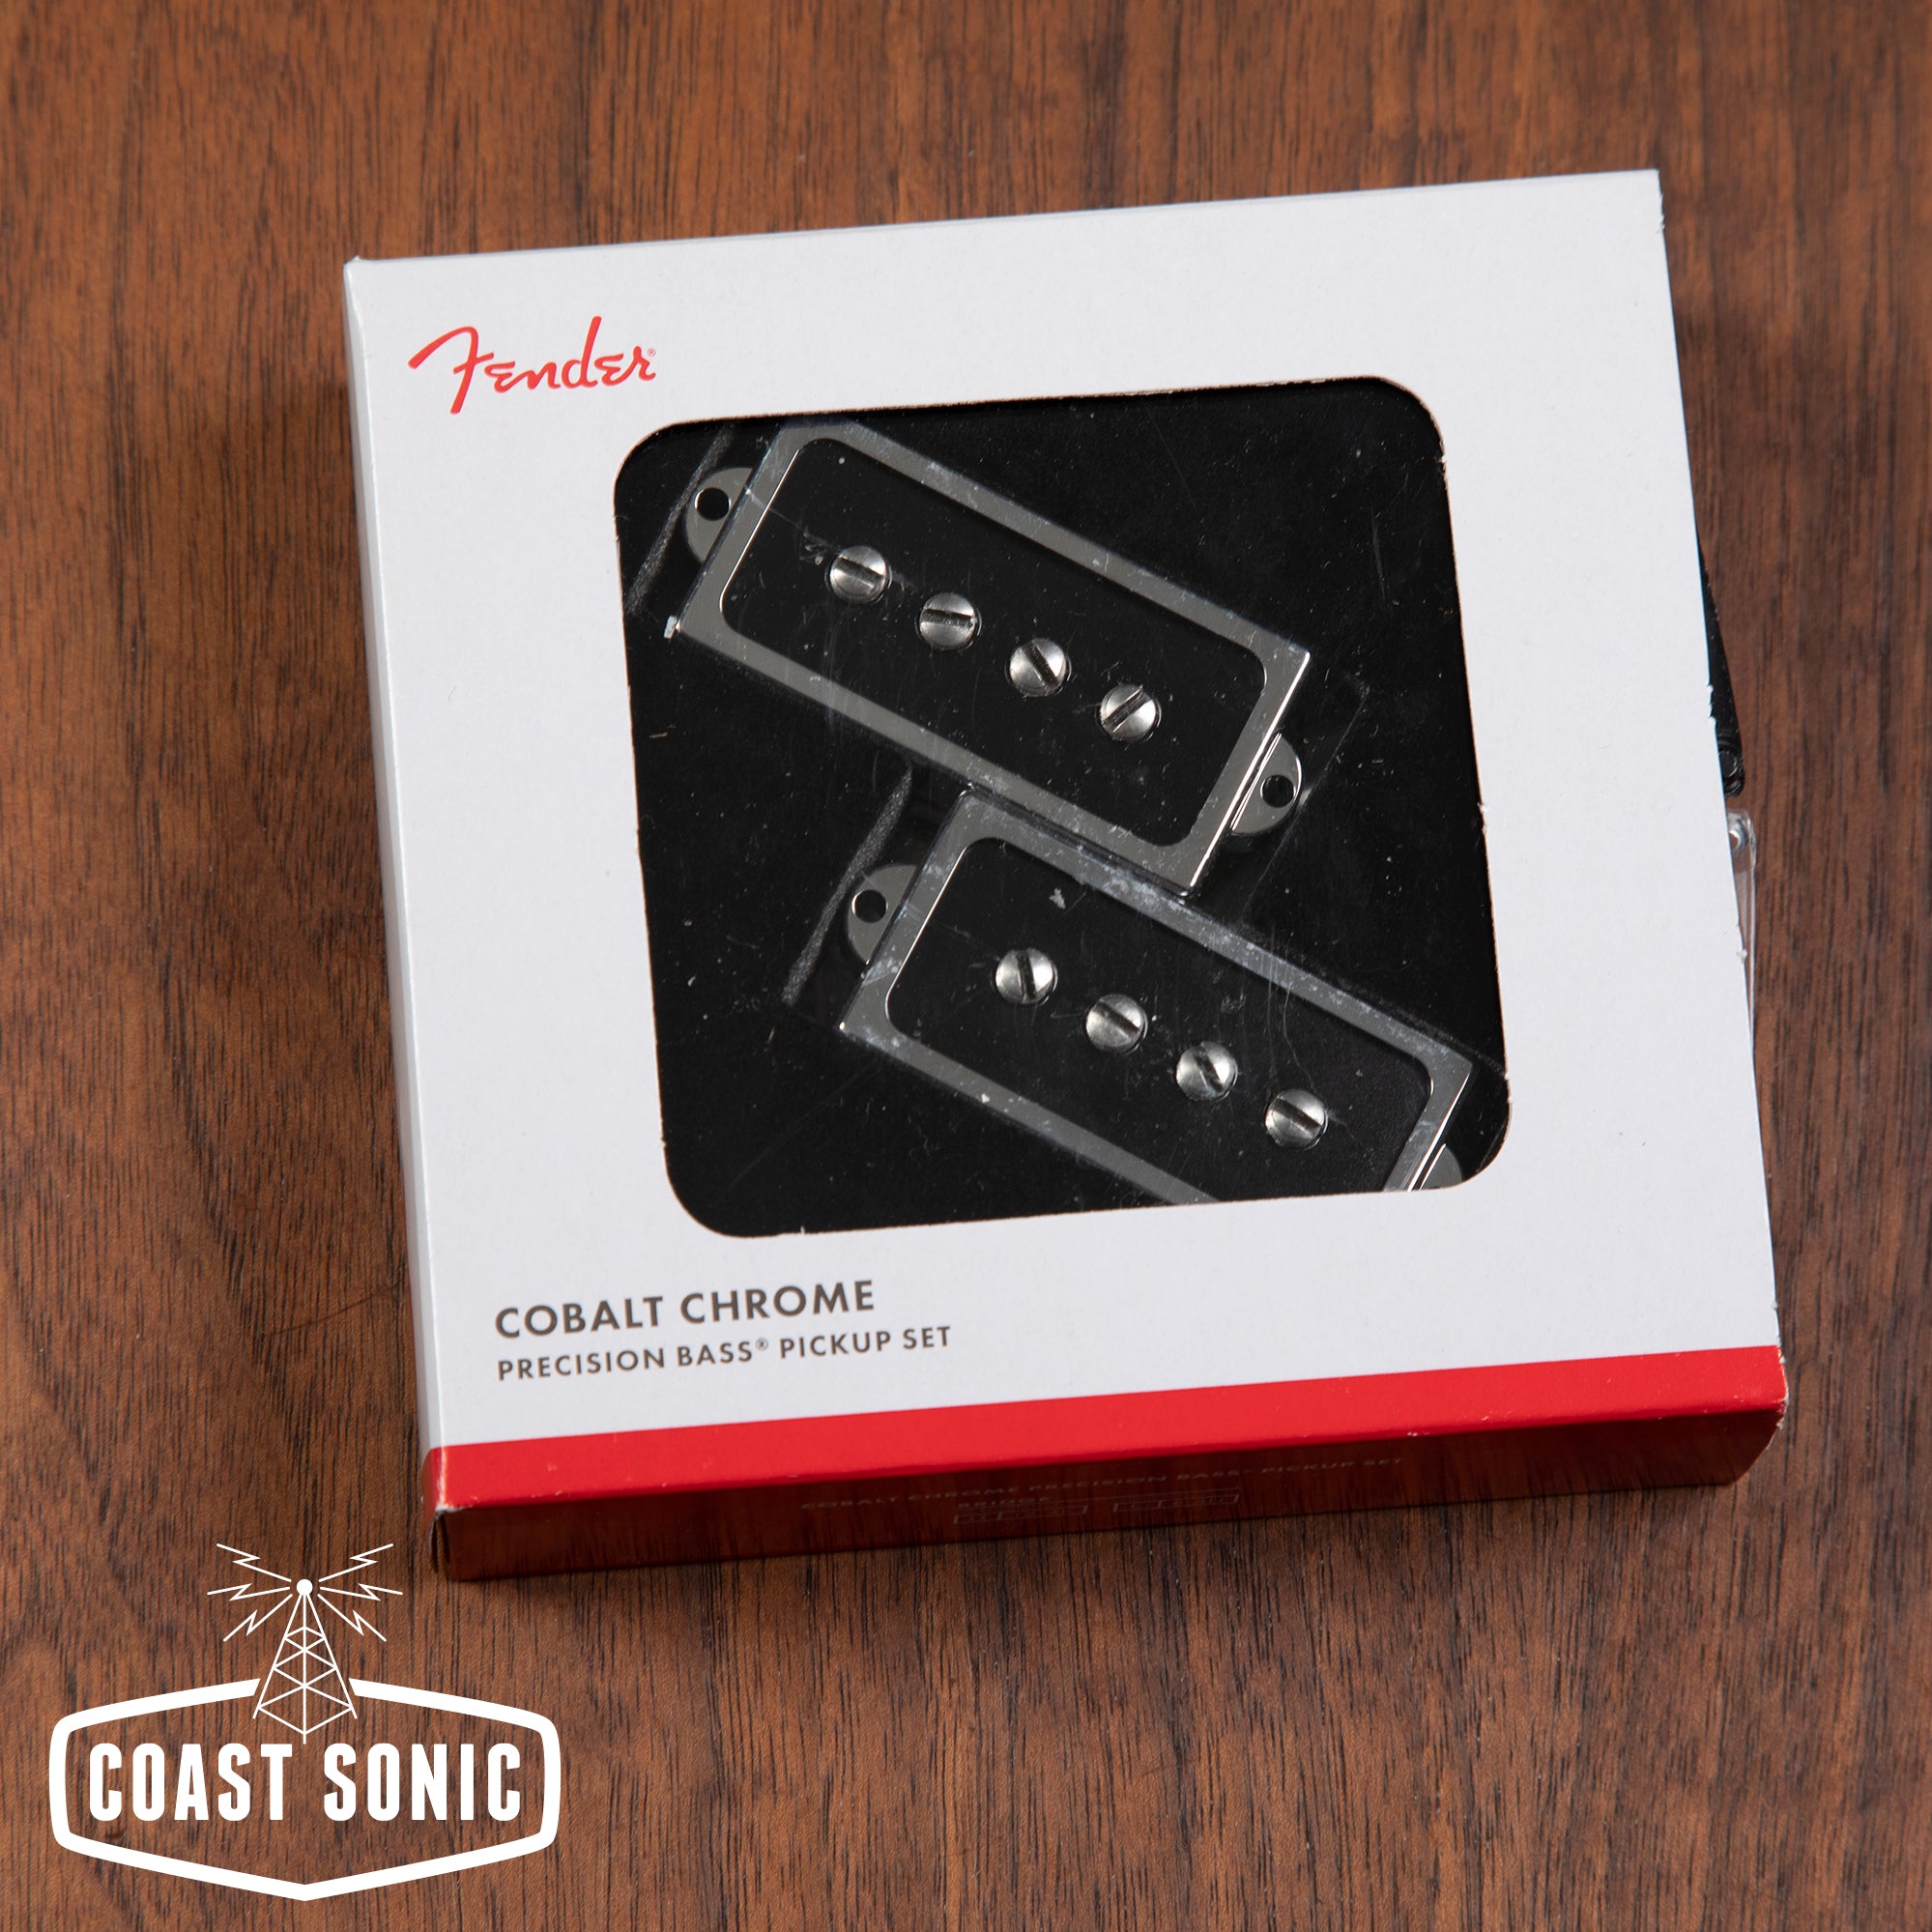 Fender Cobalt Chrome Precision Bass Pickup Set